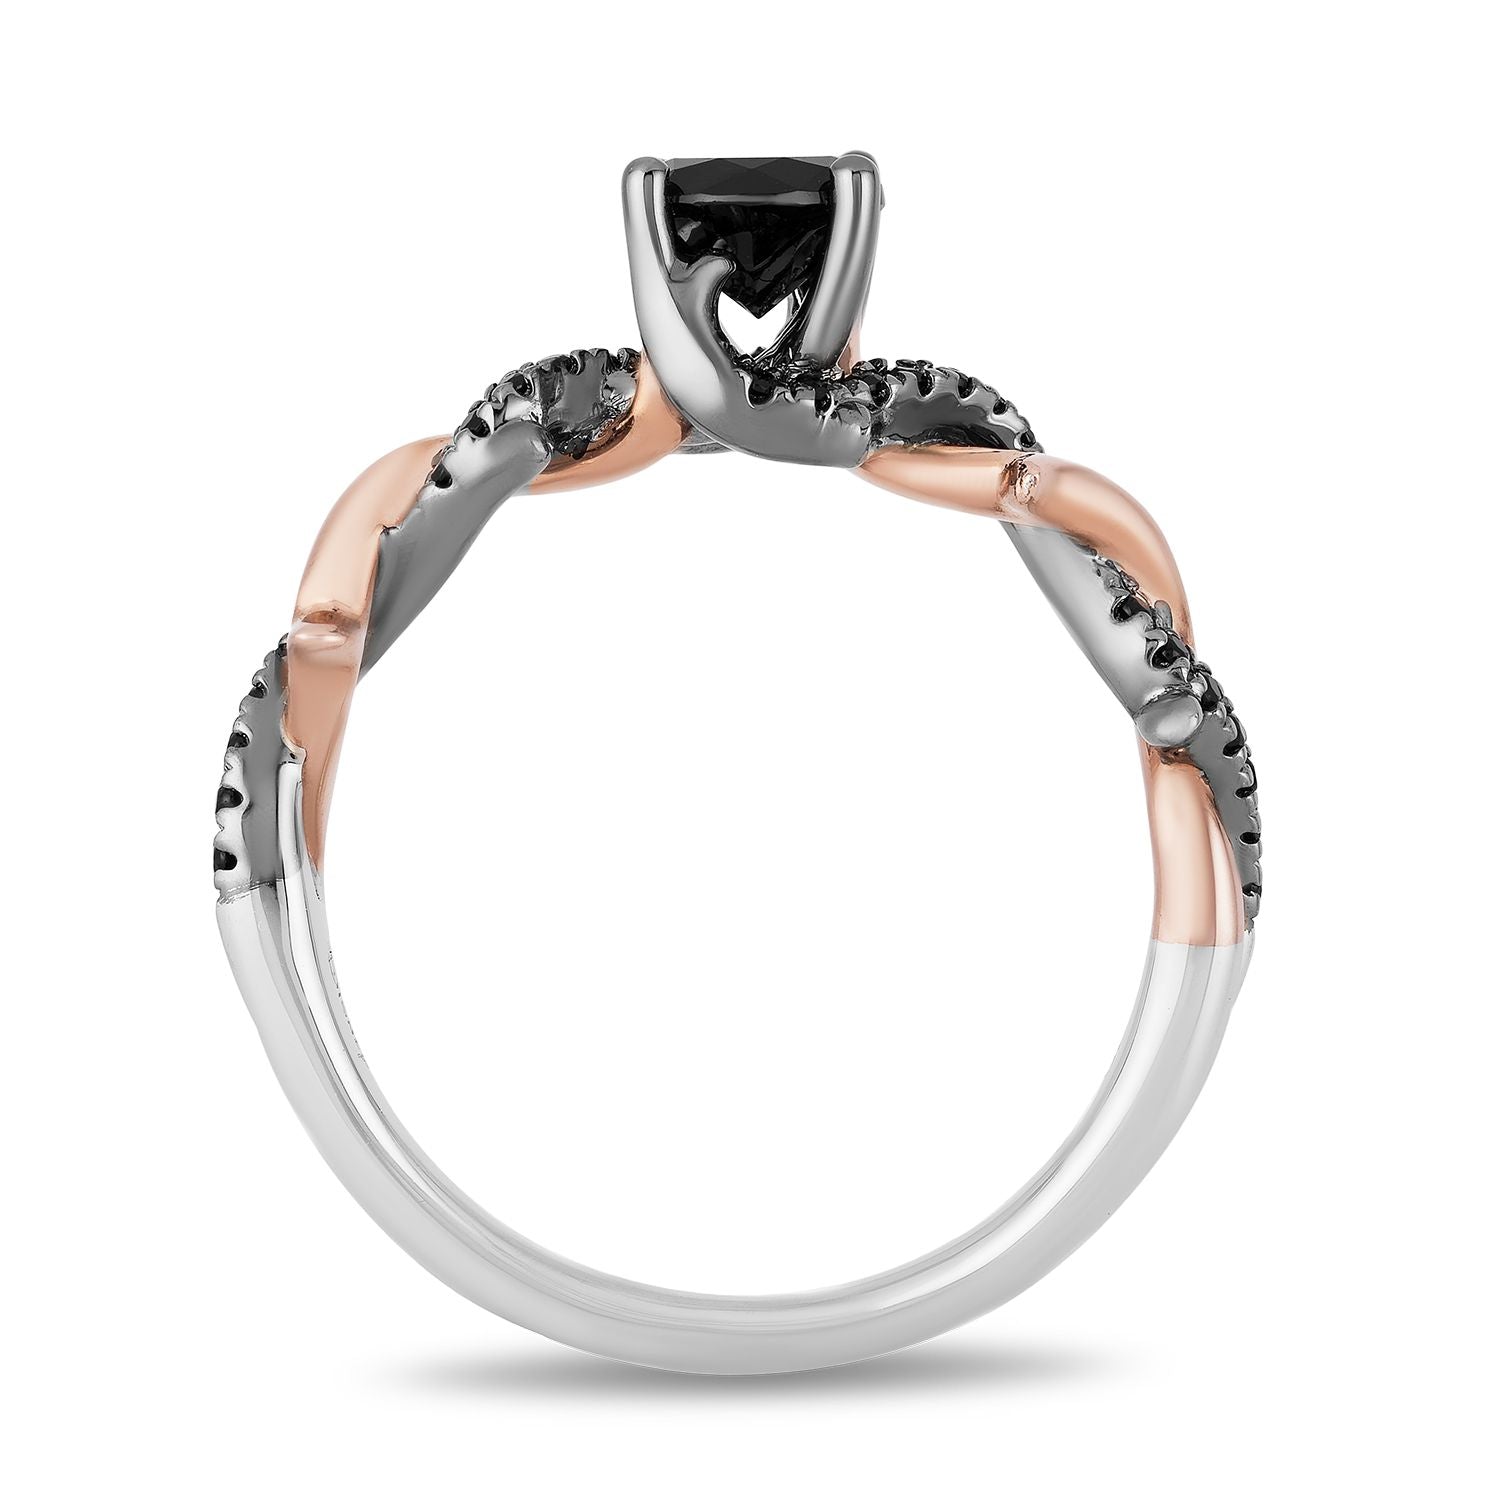 Disney Maleficent Inspired Diamond Engagement Ring 14K White Gold